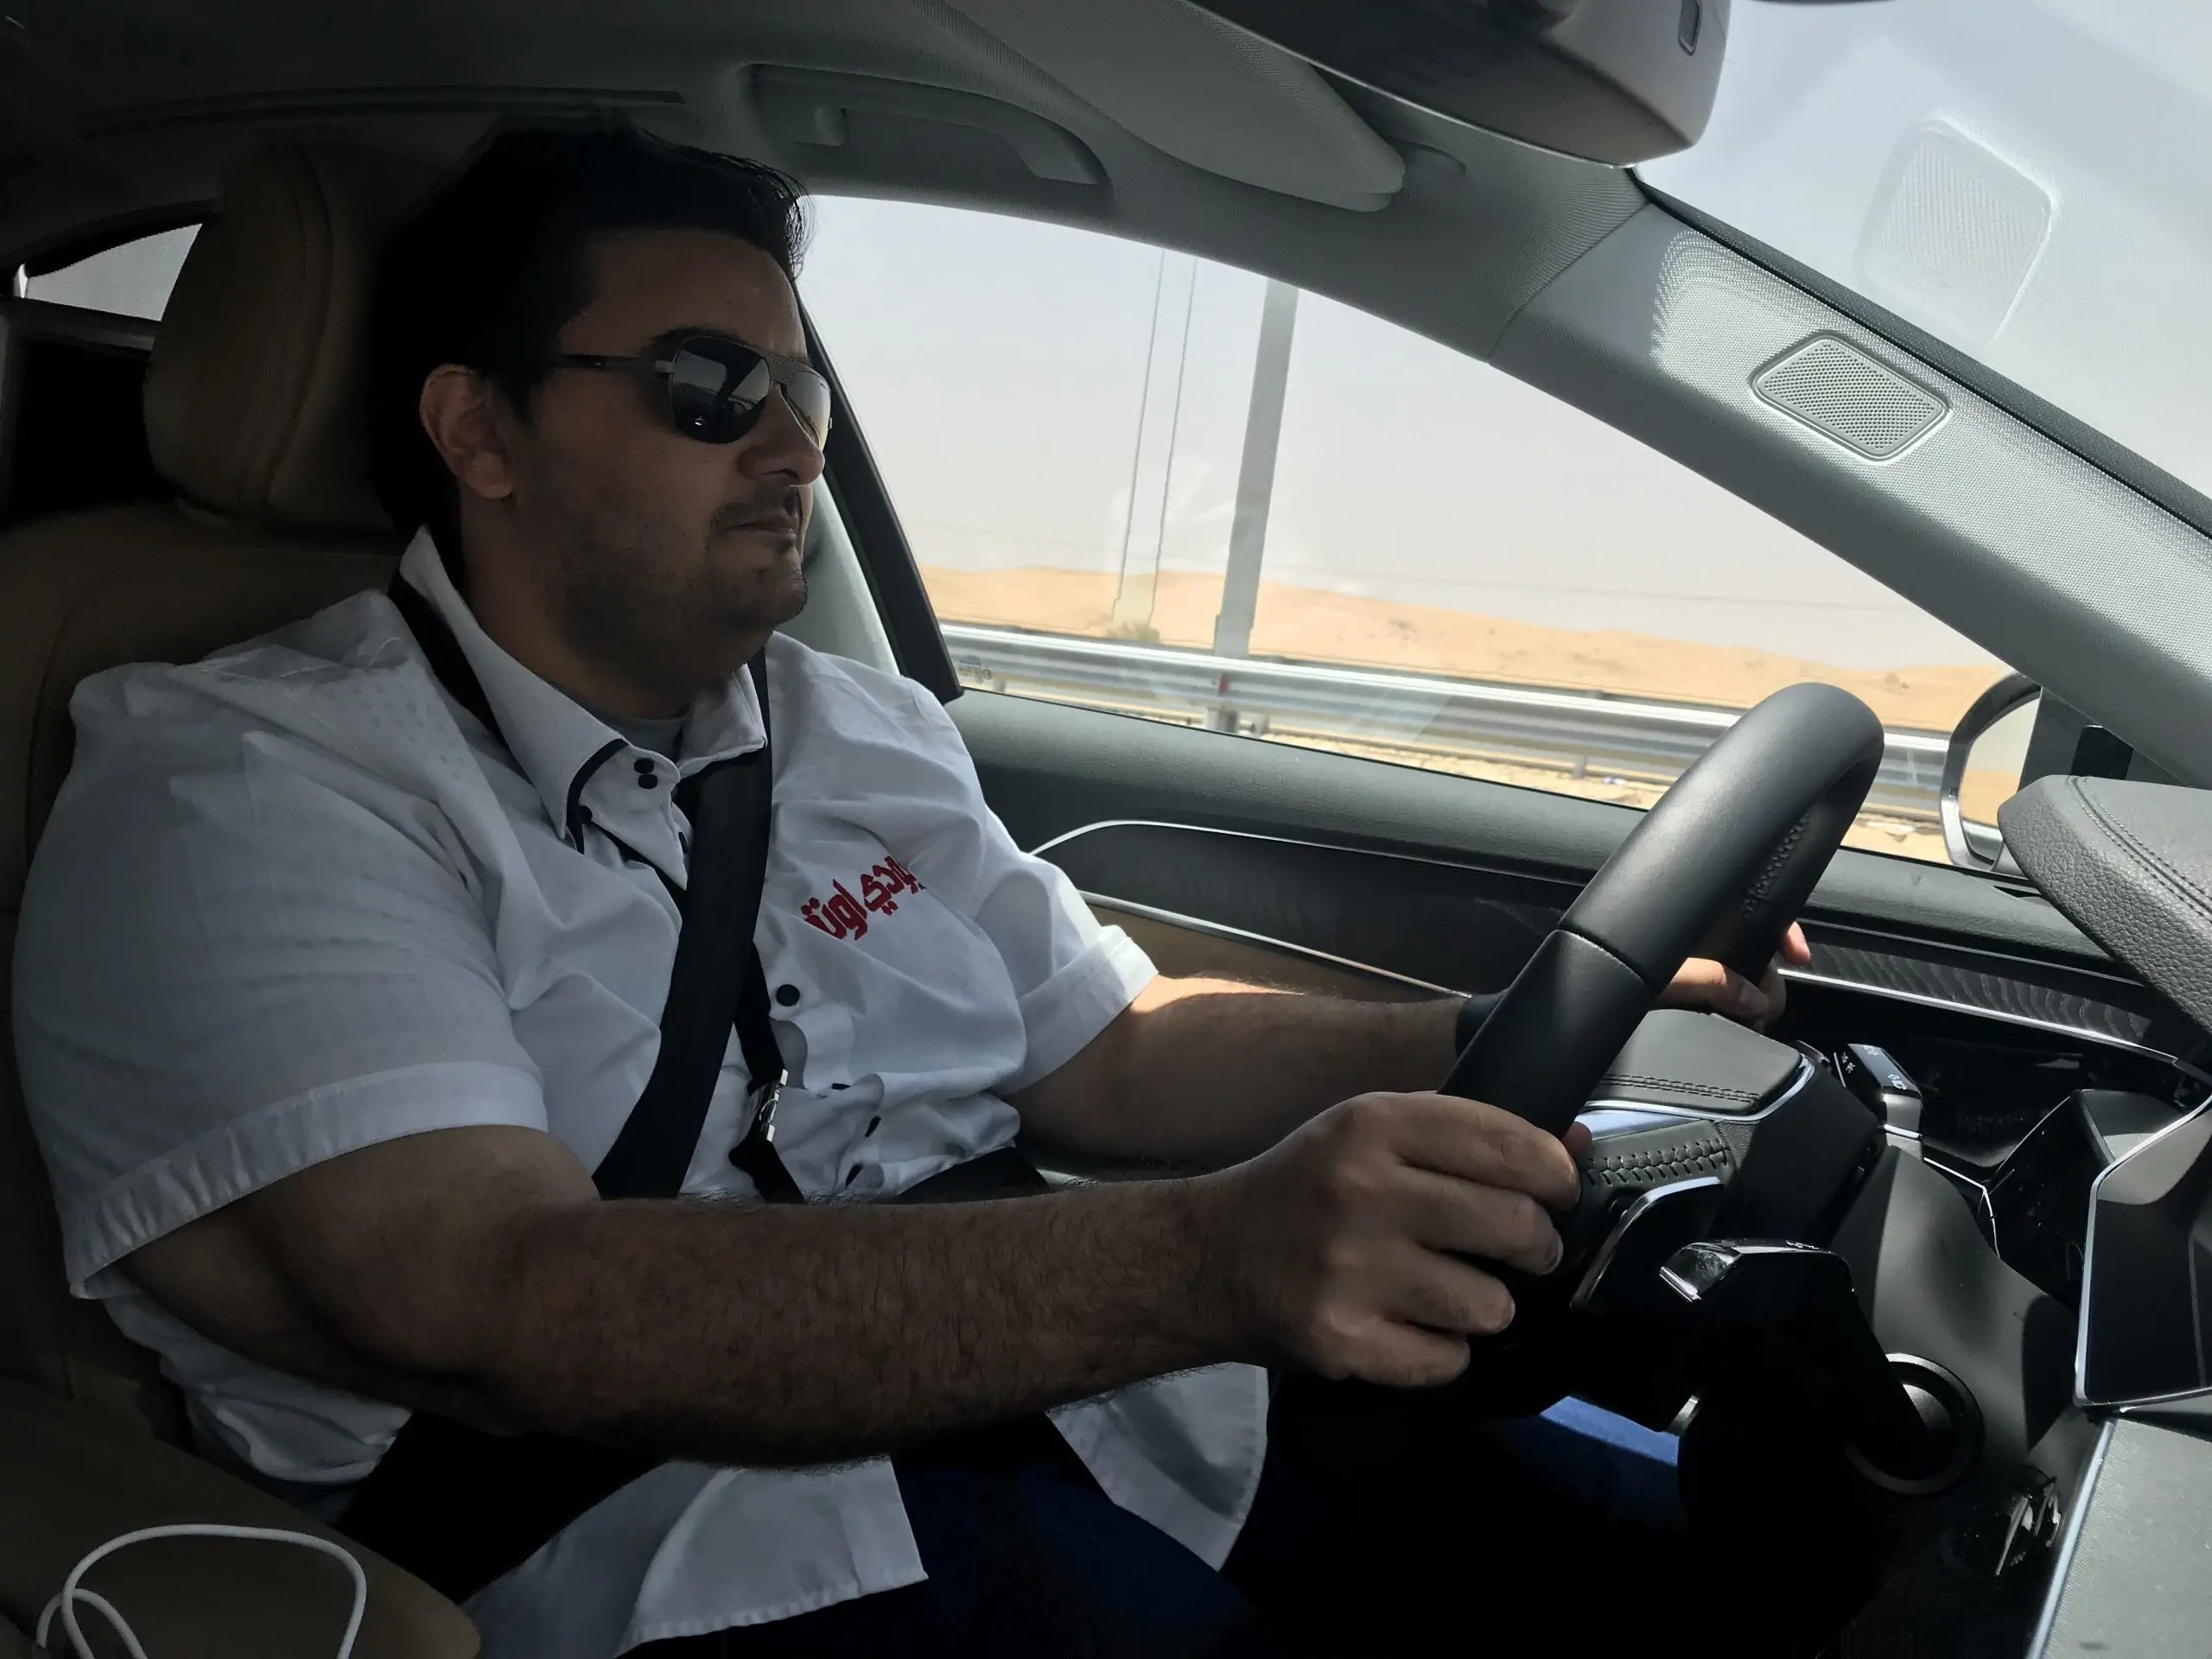 بالفيديو: تجربة أودي A8 الجديدة كليا مع عبدالرحمن الرمّال